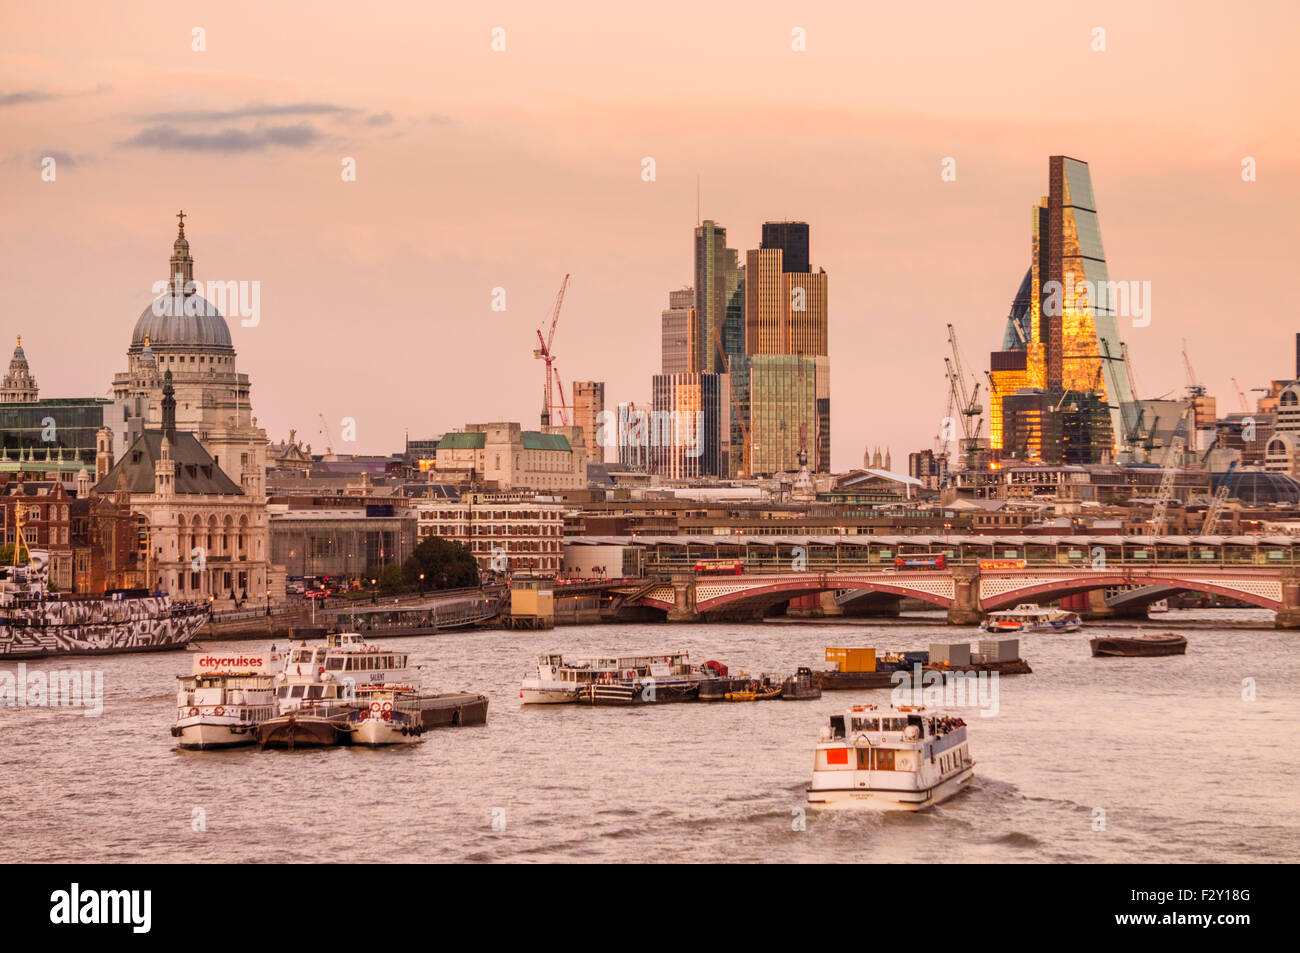 St. Pauls-Kathedrale und der Londoner Skyline Bankenviertel bei Sonnenuntergang River Thames Stadt London UK GB EU Europas Stockfoto